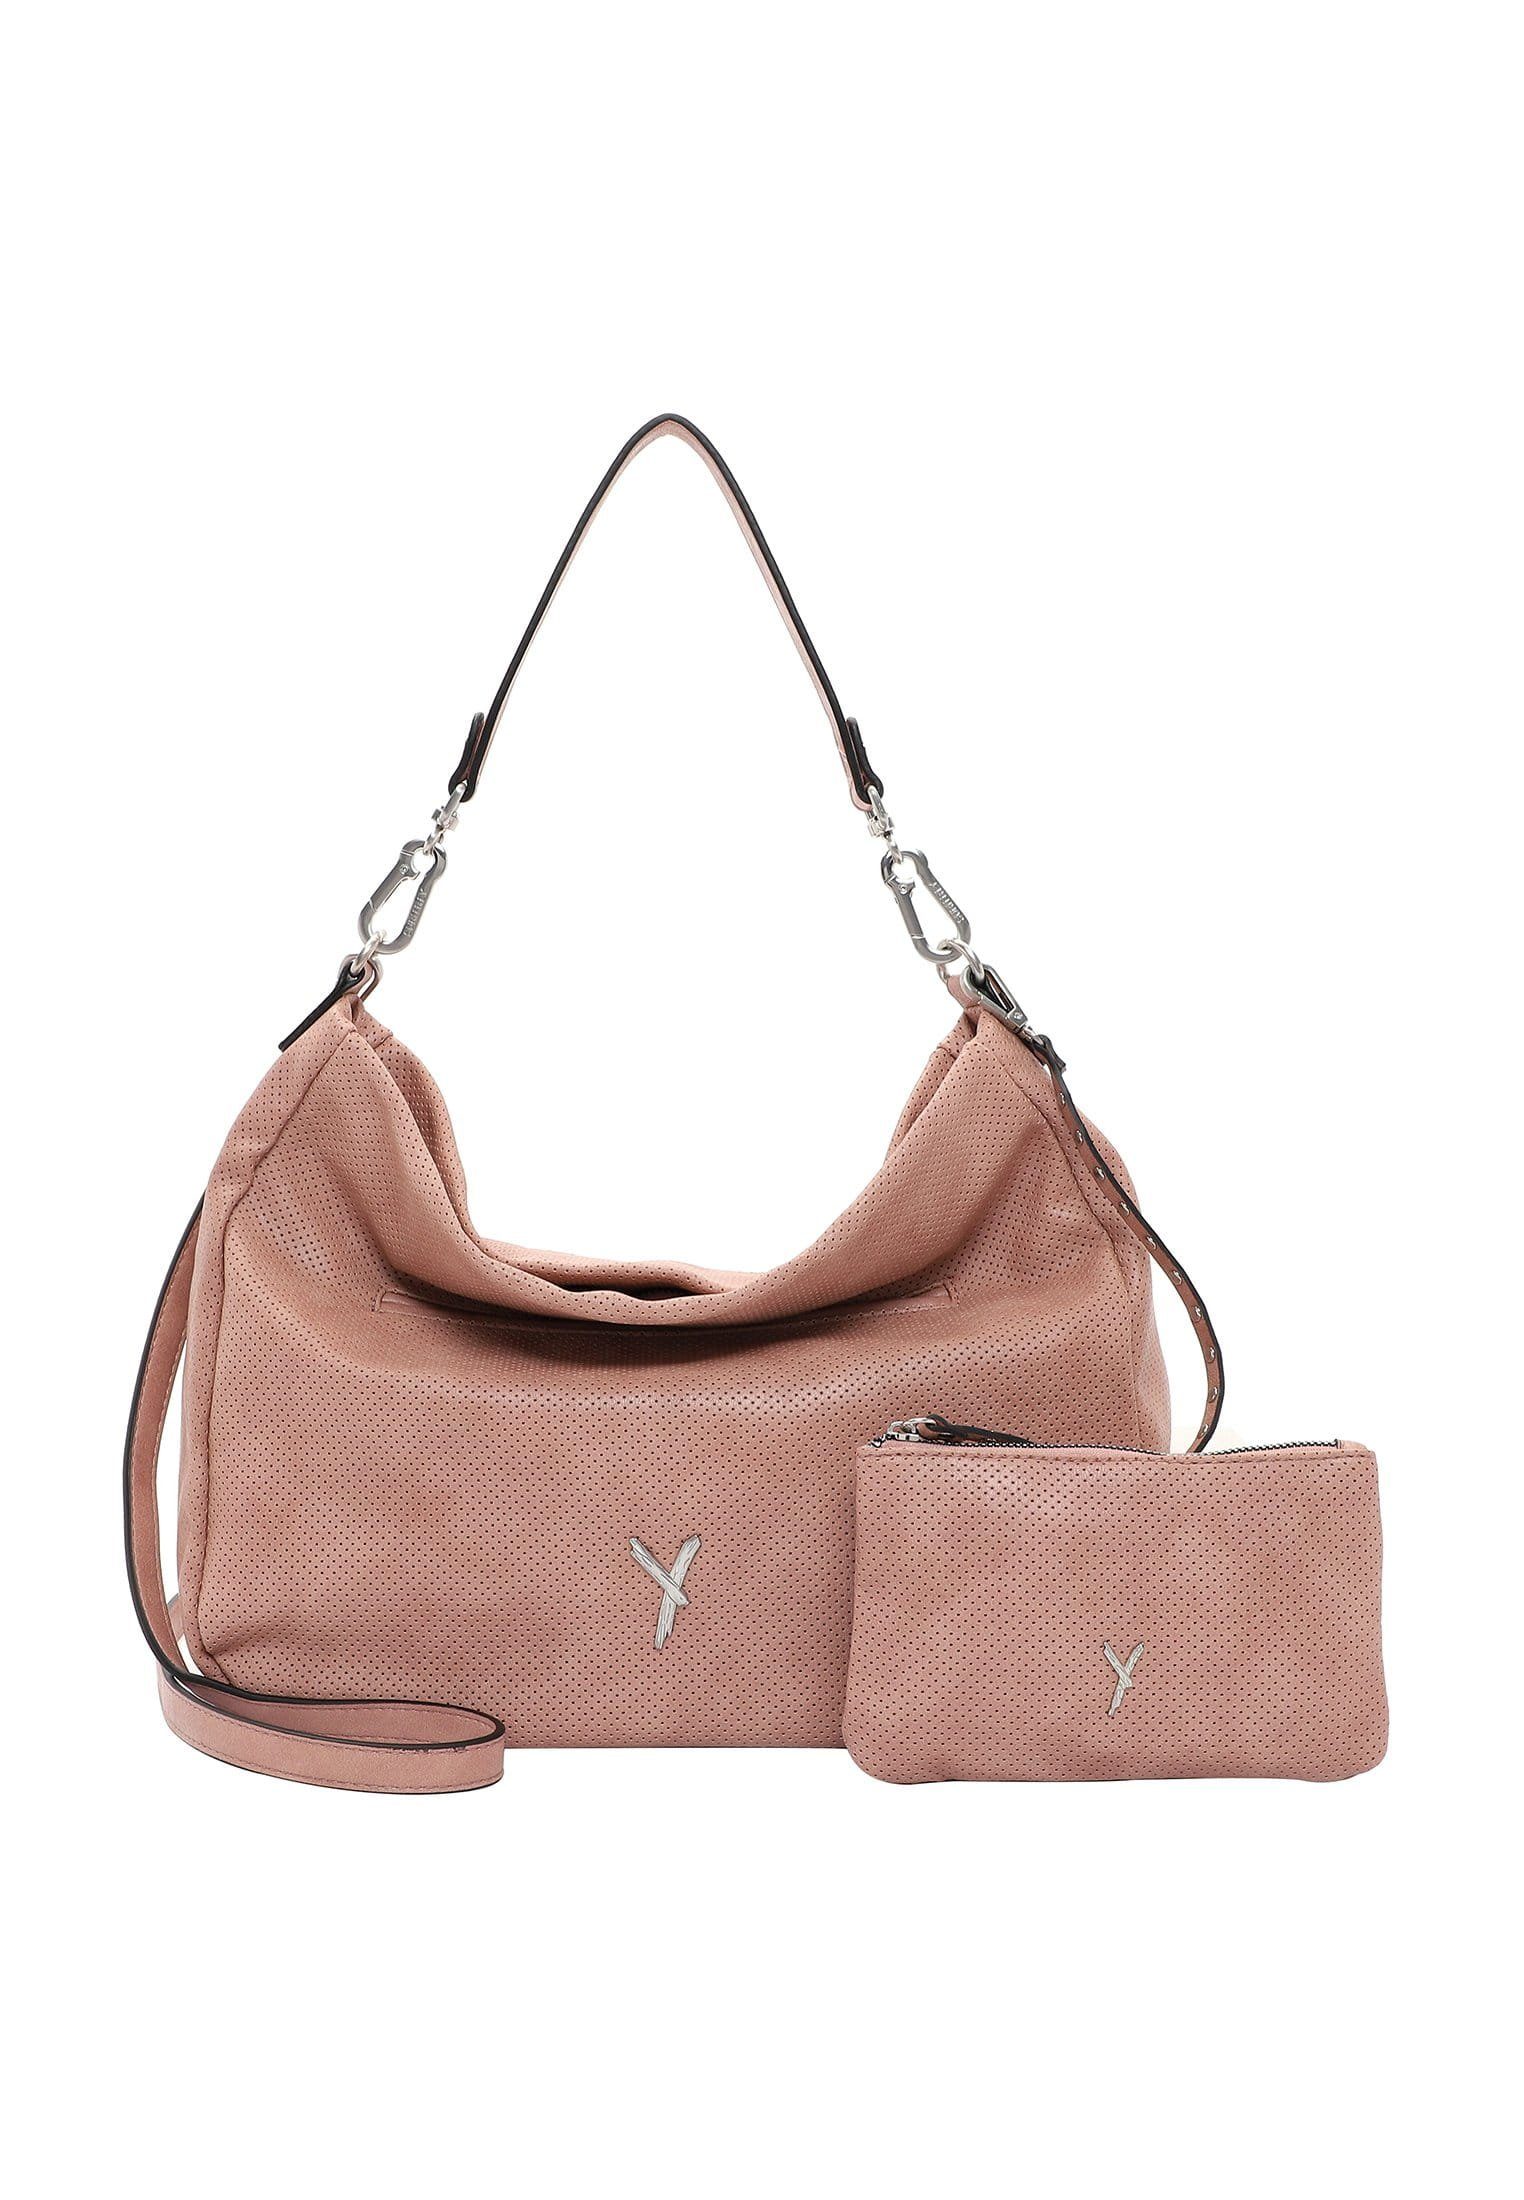 SURI FREY Handtasche »Laley«, Für Damen kaufen | OTTO